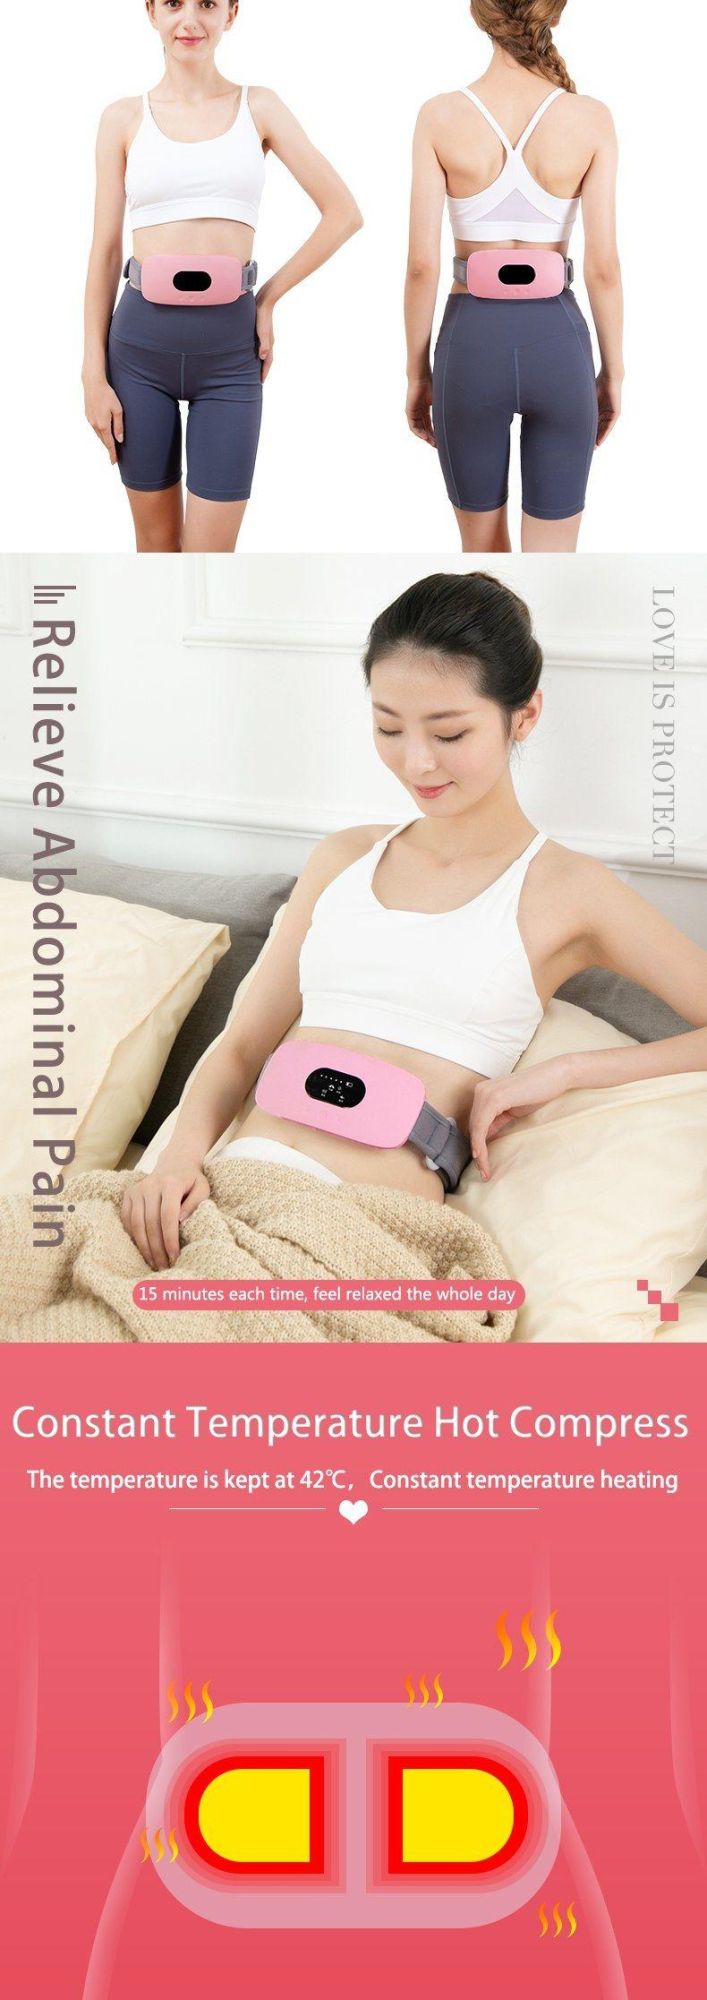 Hezheng Weight Loss Belly Fat Reducing Waist Vibrating Slimming Massage Belt